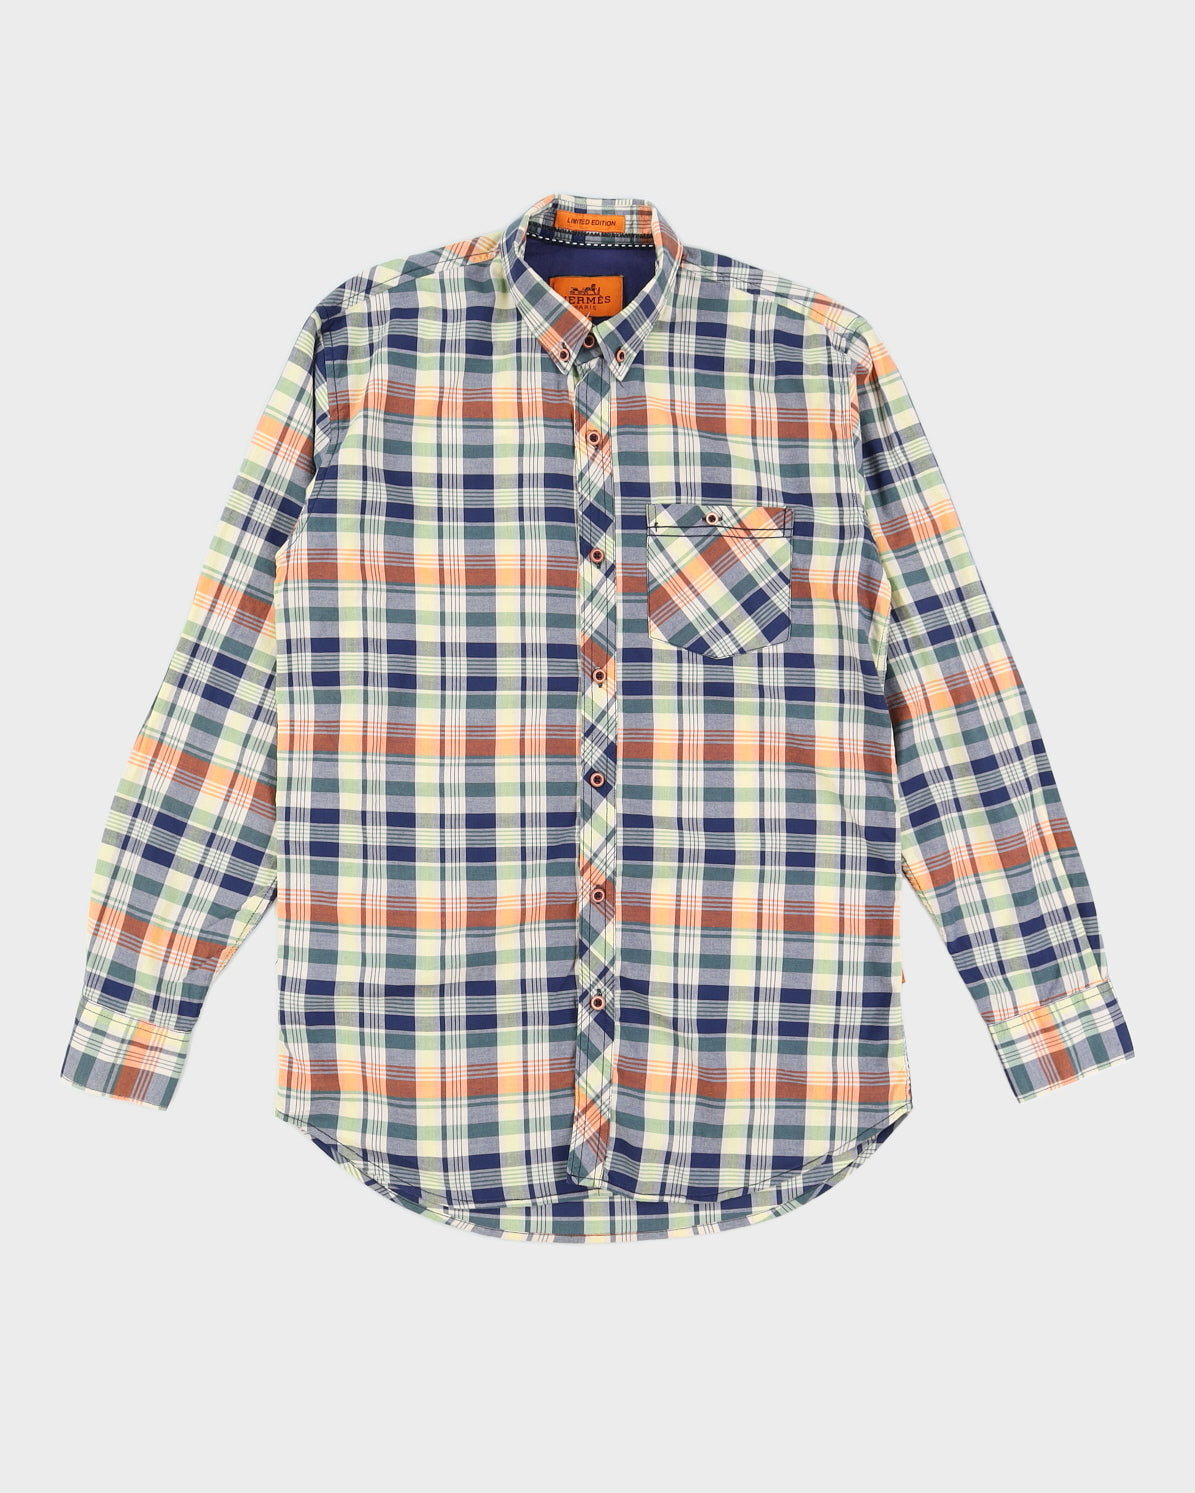 Hermes Men's Plaid Button-up Shirt - L